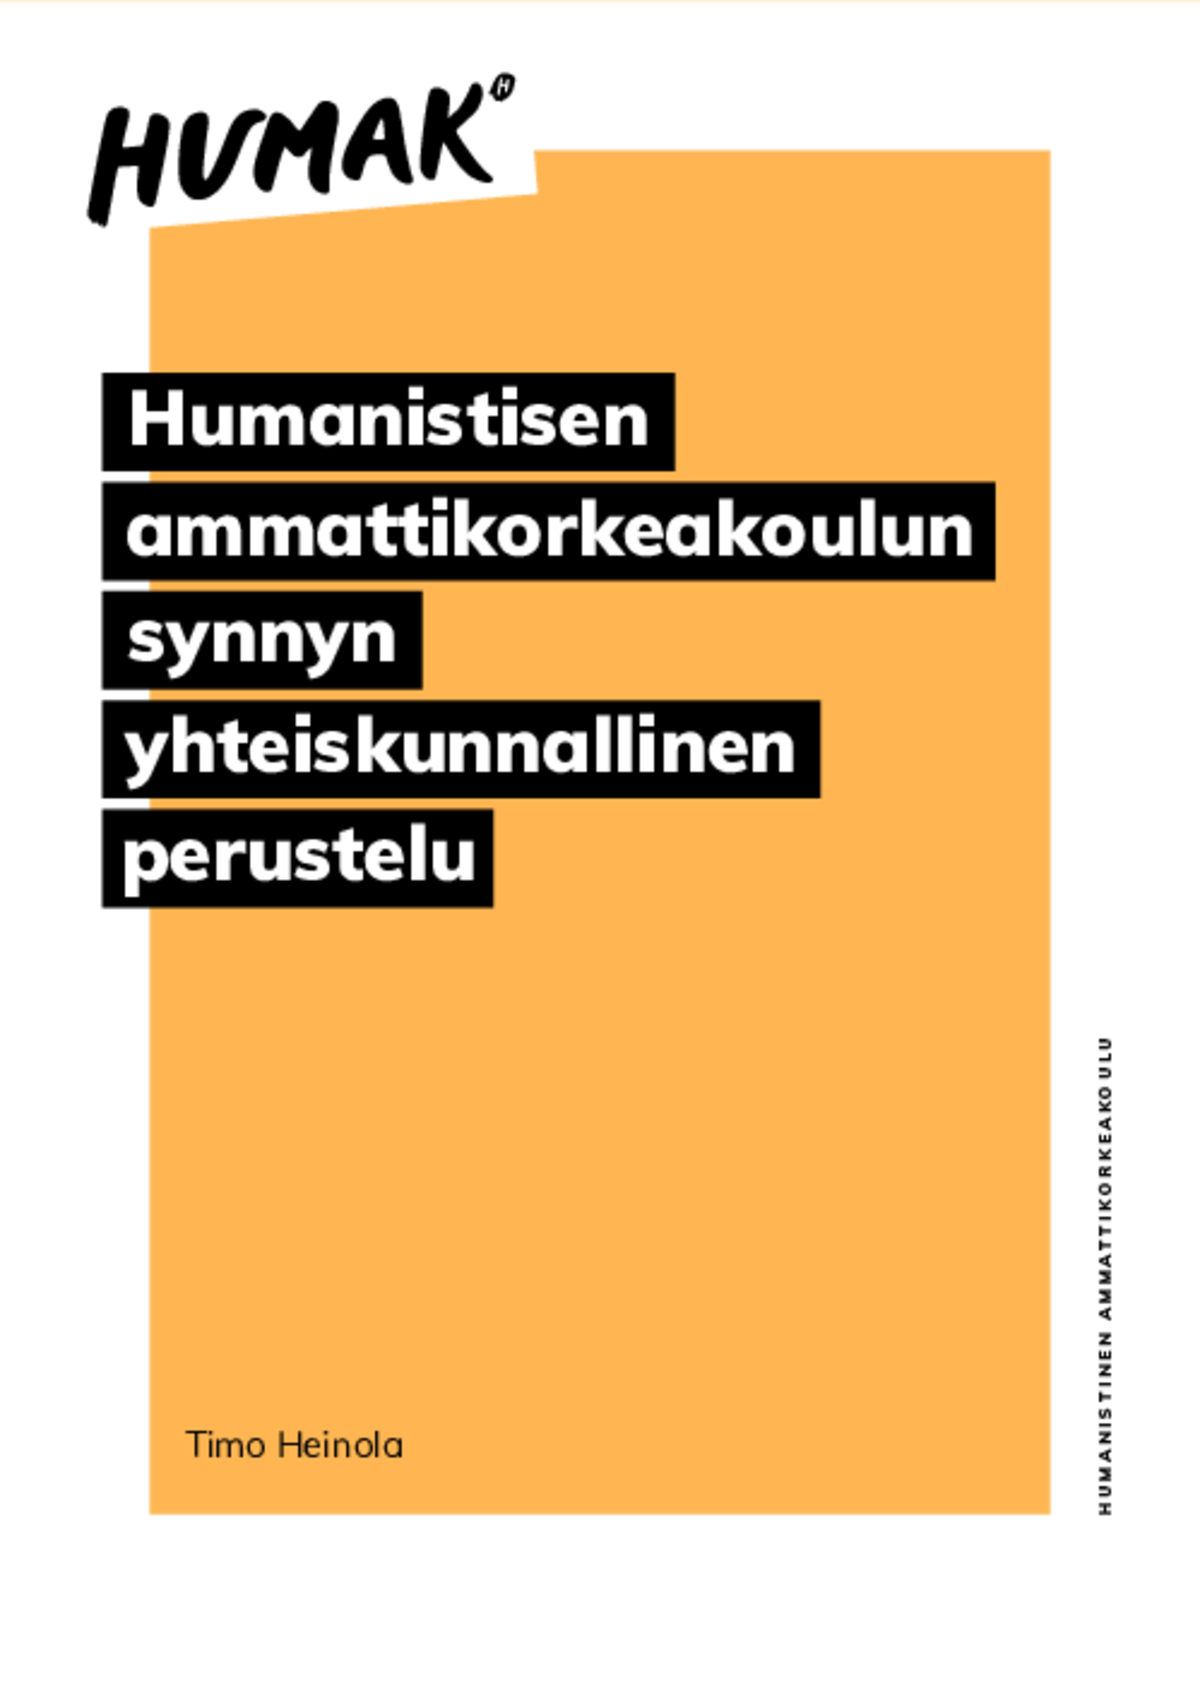 Timo Heinola: Humanistisen ammattikorkeakoulun  synnyn yhteiskunnallinen perustelu